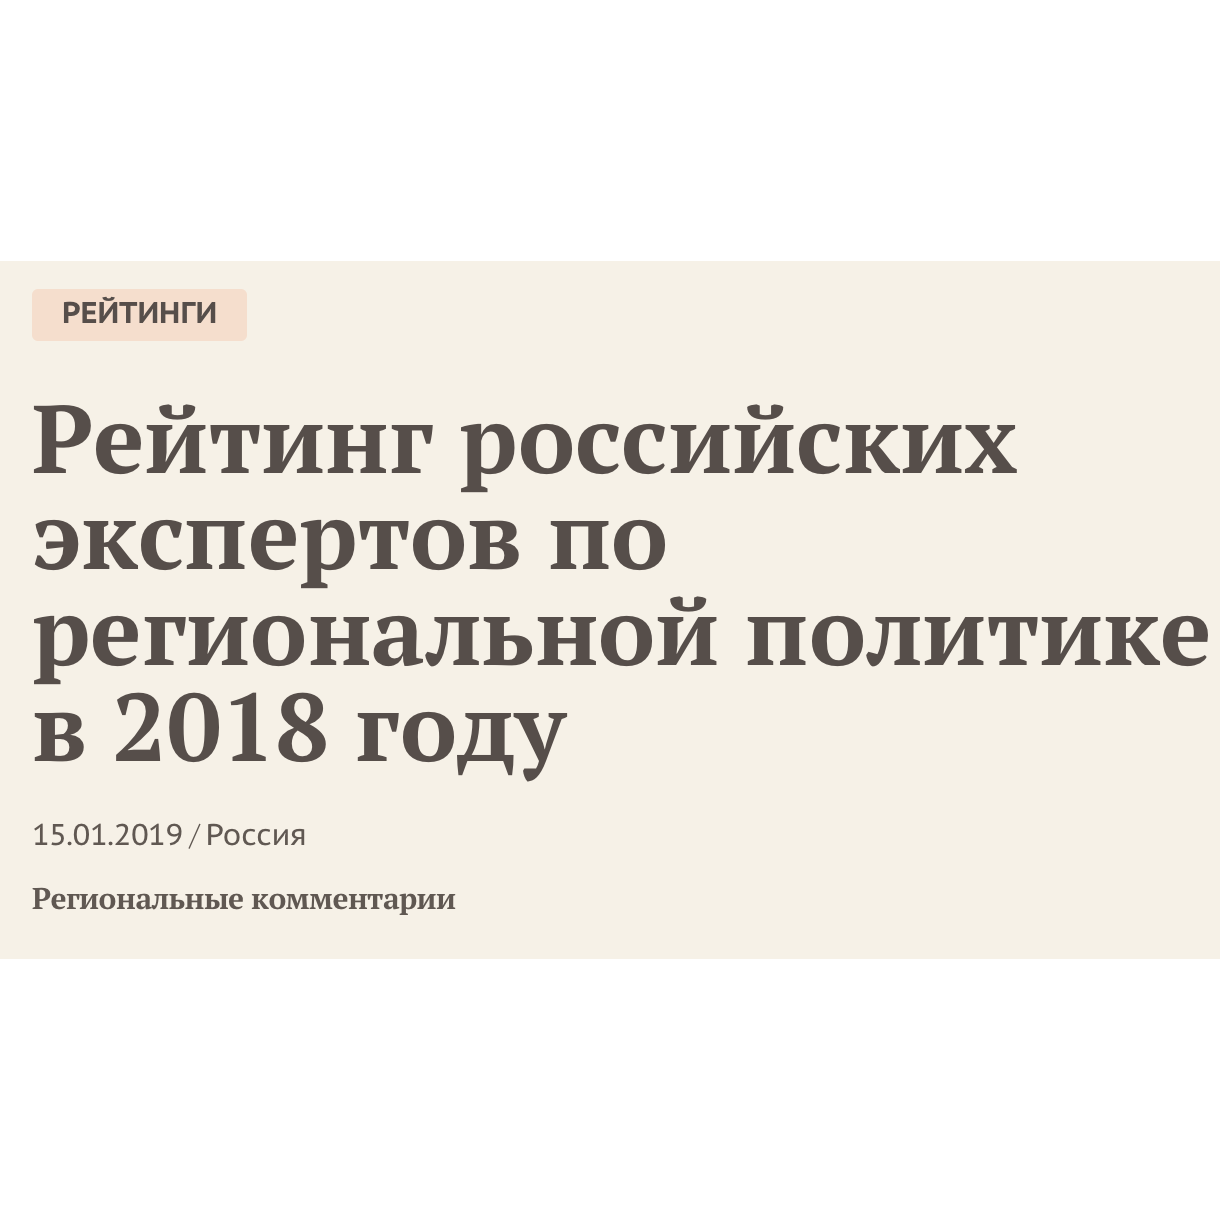 В.В. Климанов занял четвертое место в рейтинге экспертов по региональной политике в 2018 году